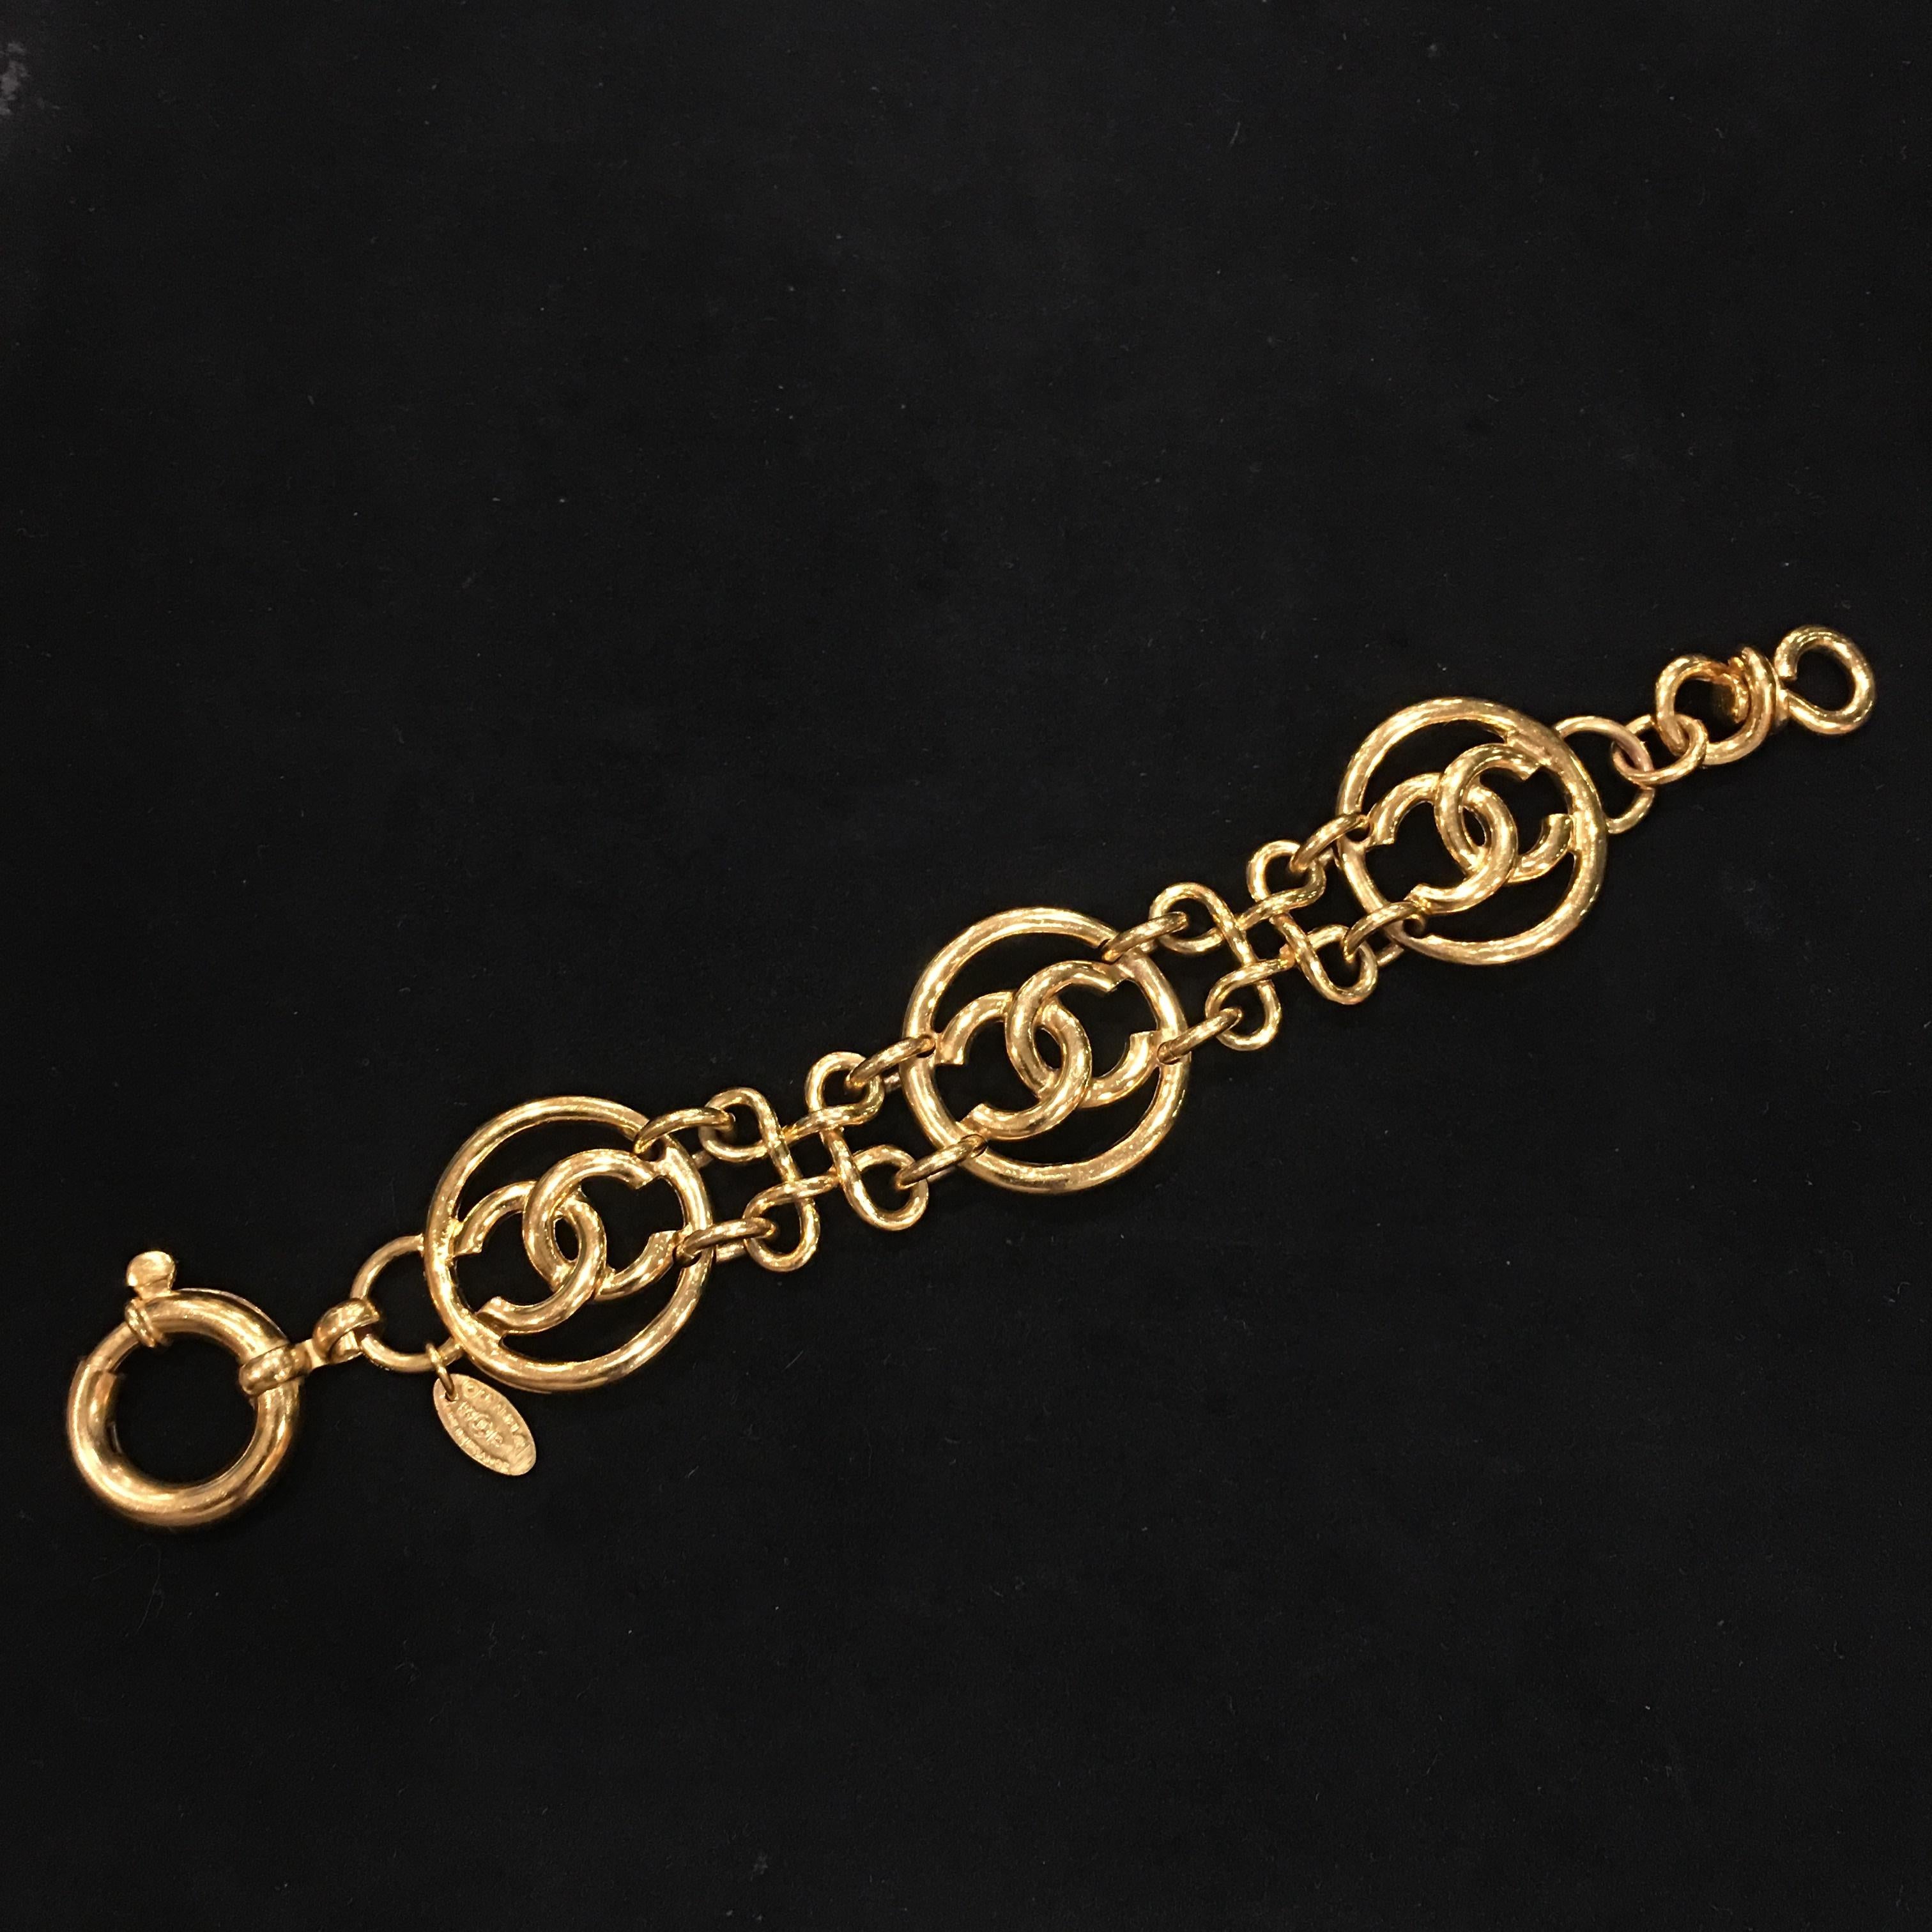 Marque : Chanel
Référence : JW322
Dimensions du pendentif : 2.8cm x 2.8cm
Longueur du bracelet : 19cm
Matériau : Métal doré
Année : 1993
Fabriqué en France

Veuillez noter : les bijoux sont garantis 100% authentiques d'occasion et peuvent donc